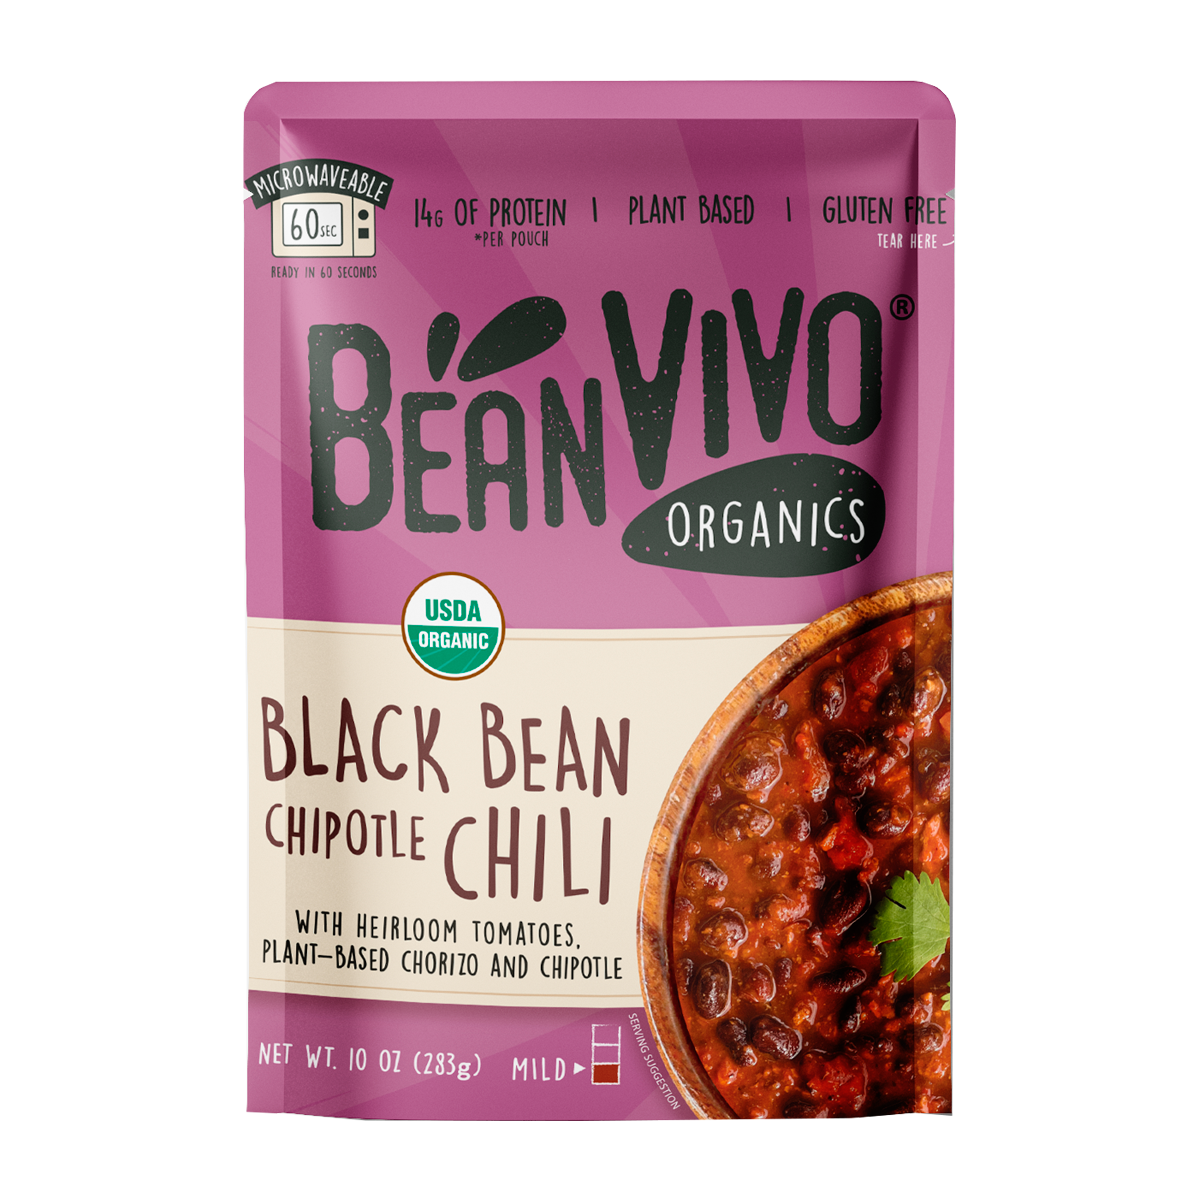 BeanVIVO Organic Black Bean Chipotle Chili 6 units per case 10.0 oz